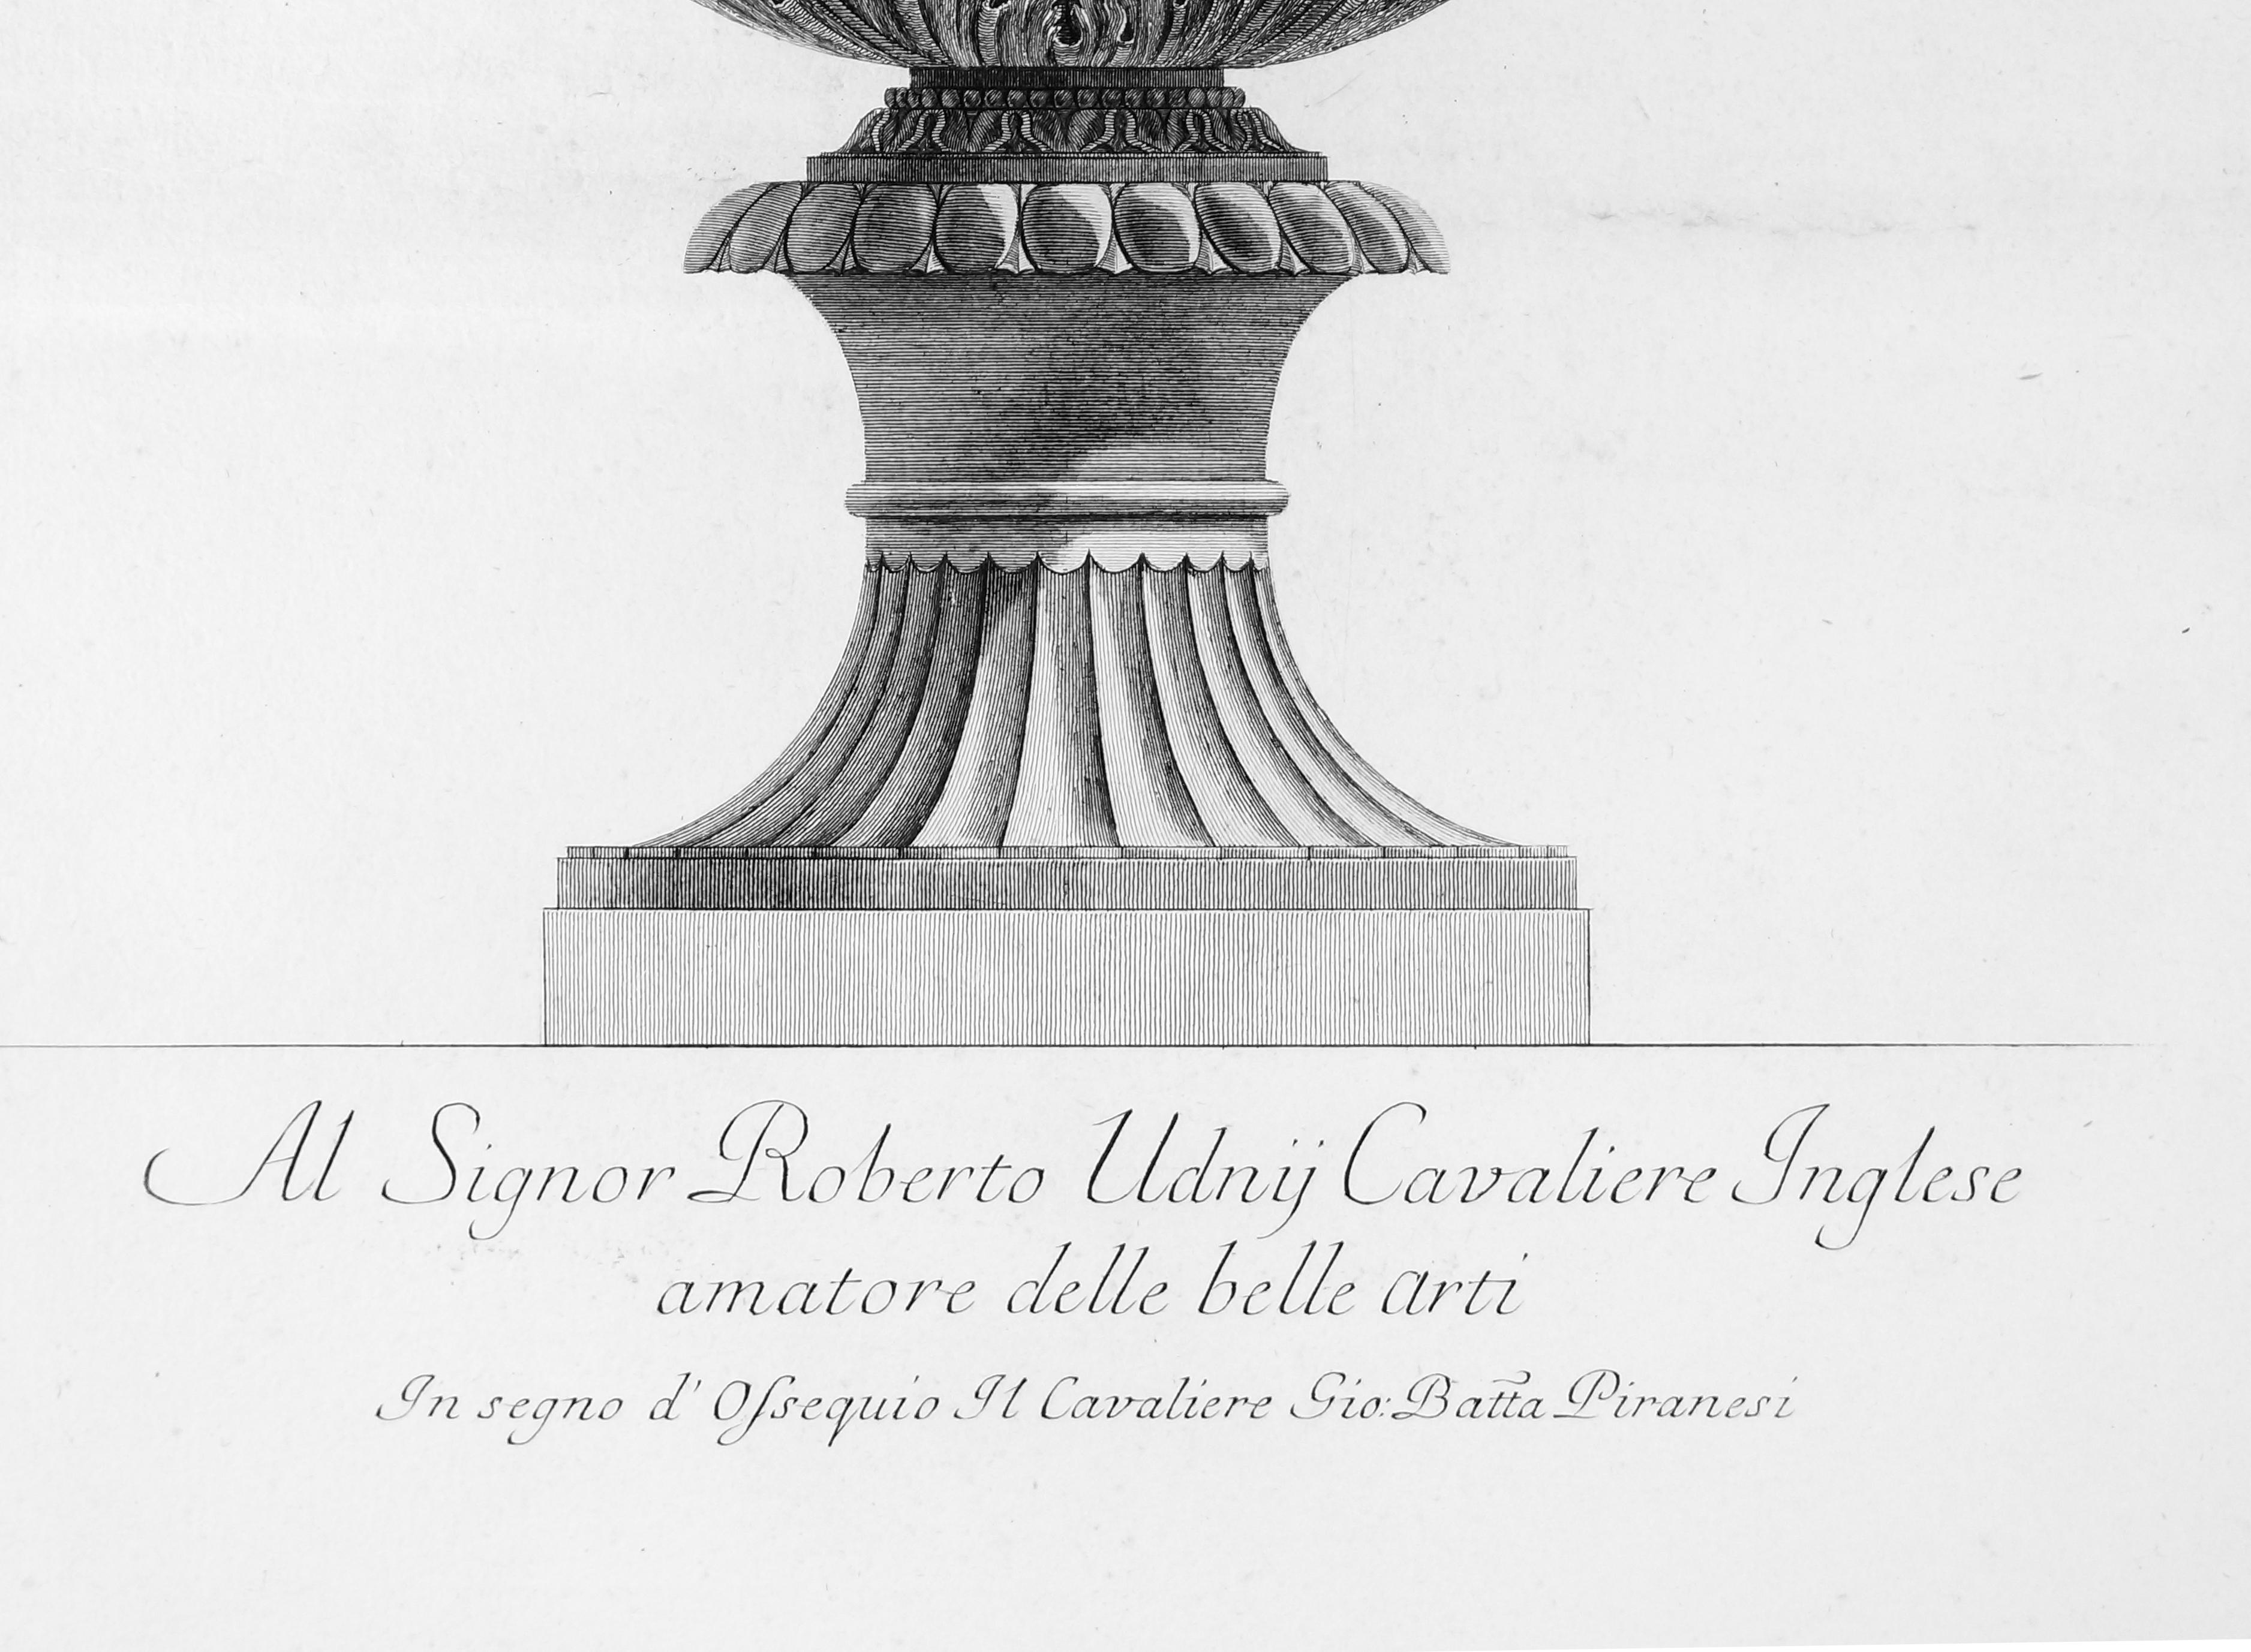  Vaso di marmo antico che si vede nel Museo Capitolino - Etching 1778 - Print by Giovanni Battista Piranesi